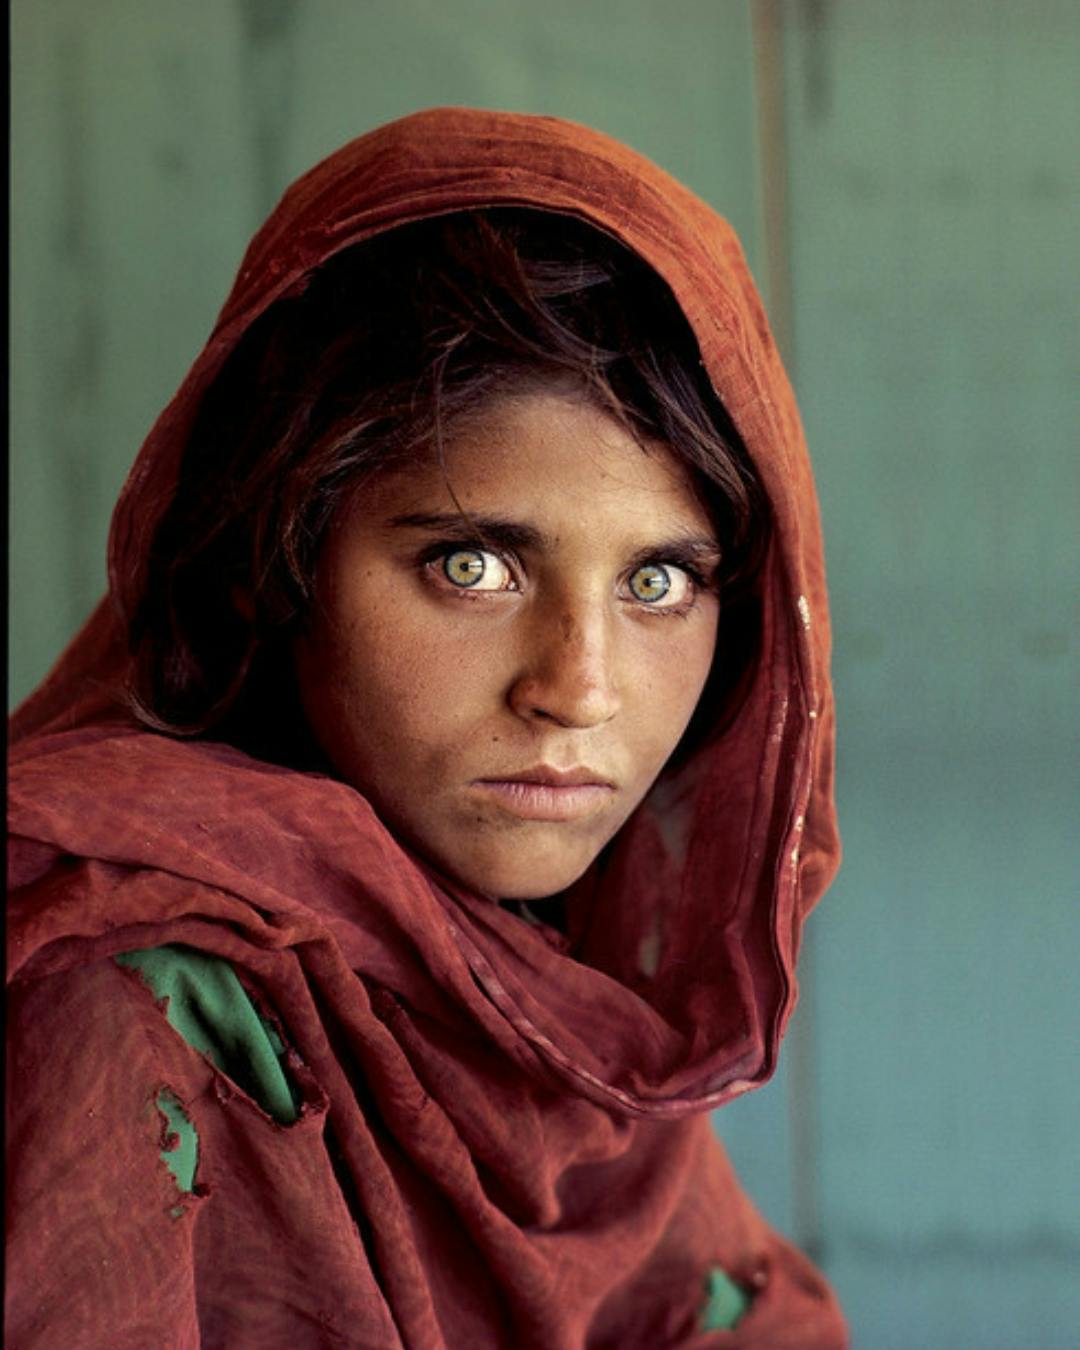 Afghan Girl by Steve McCurry.